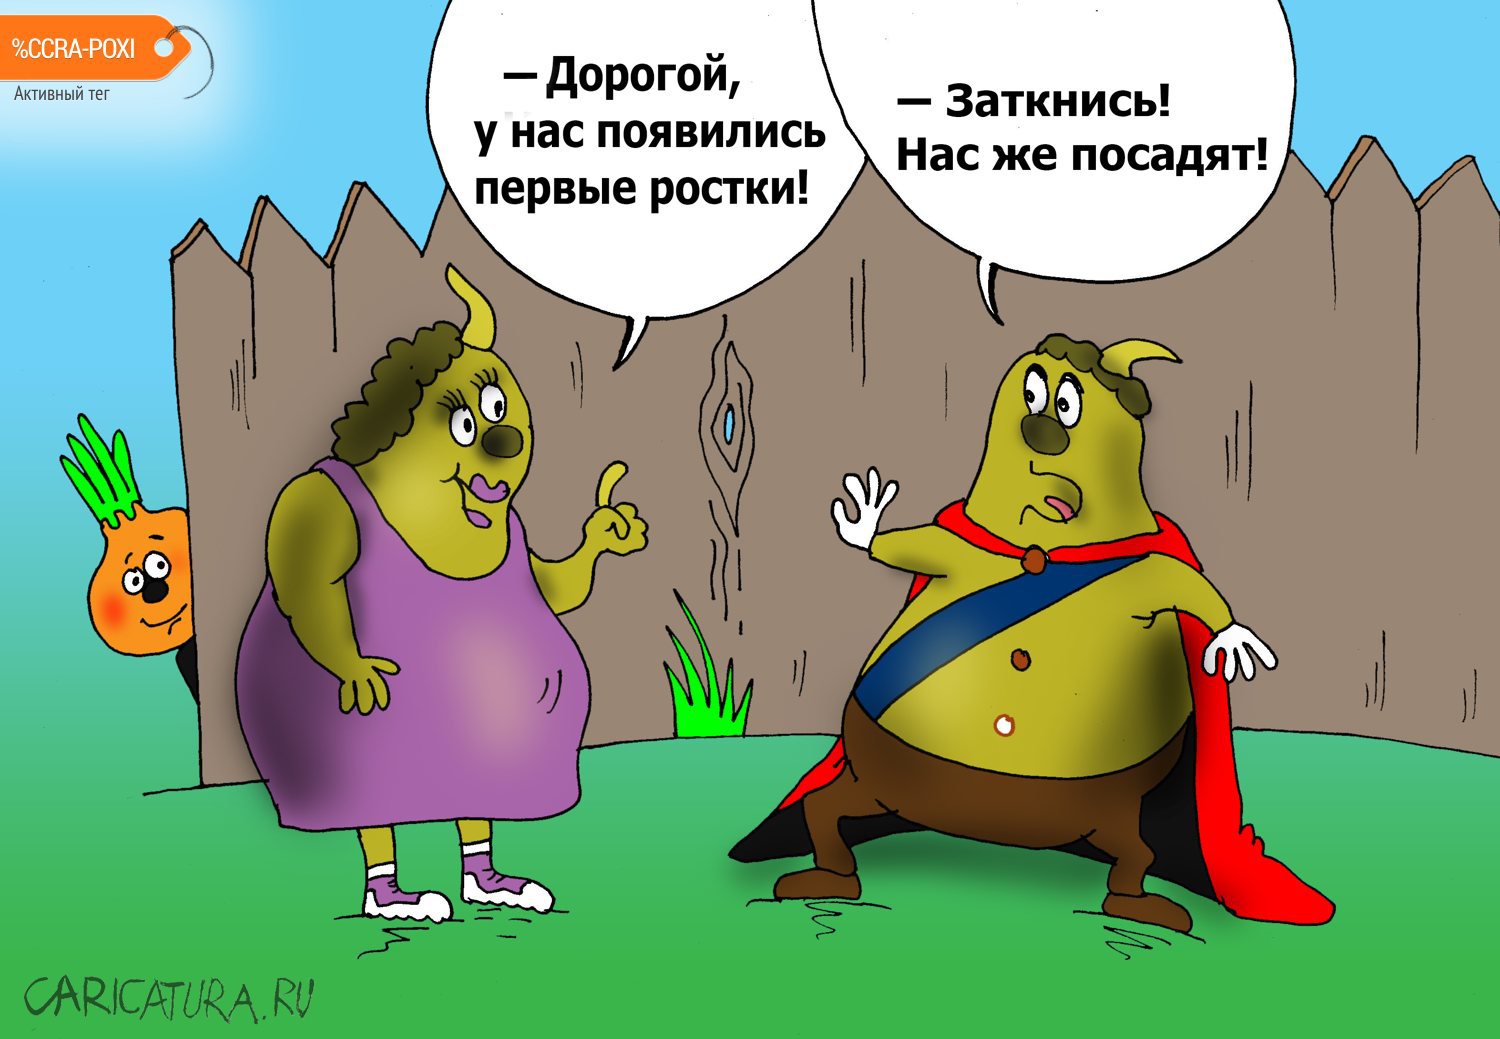 Карикатура "Пора сажать", Валерий Тарасенко